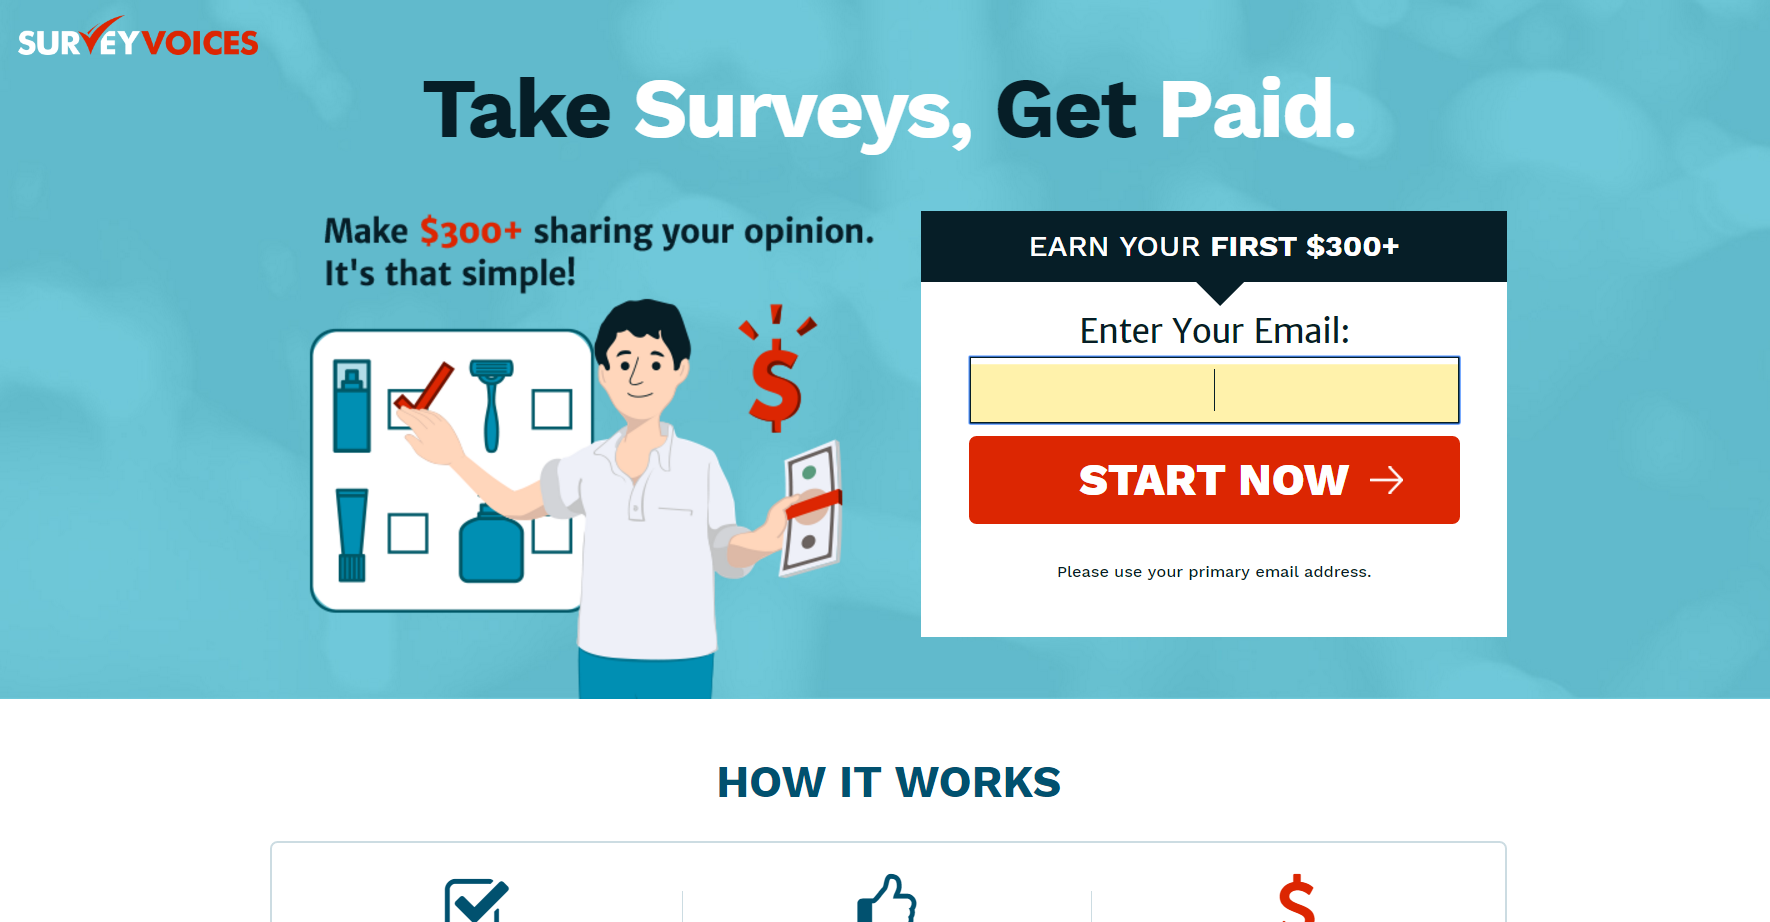 SurveyVoices - Take Surveys Get Paid - Non-Incent 